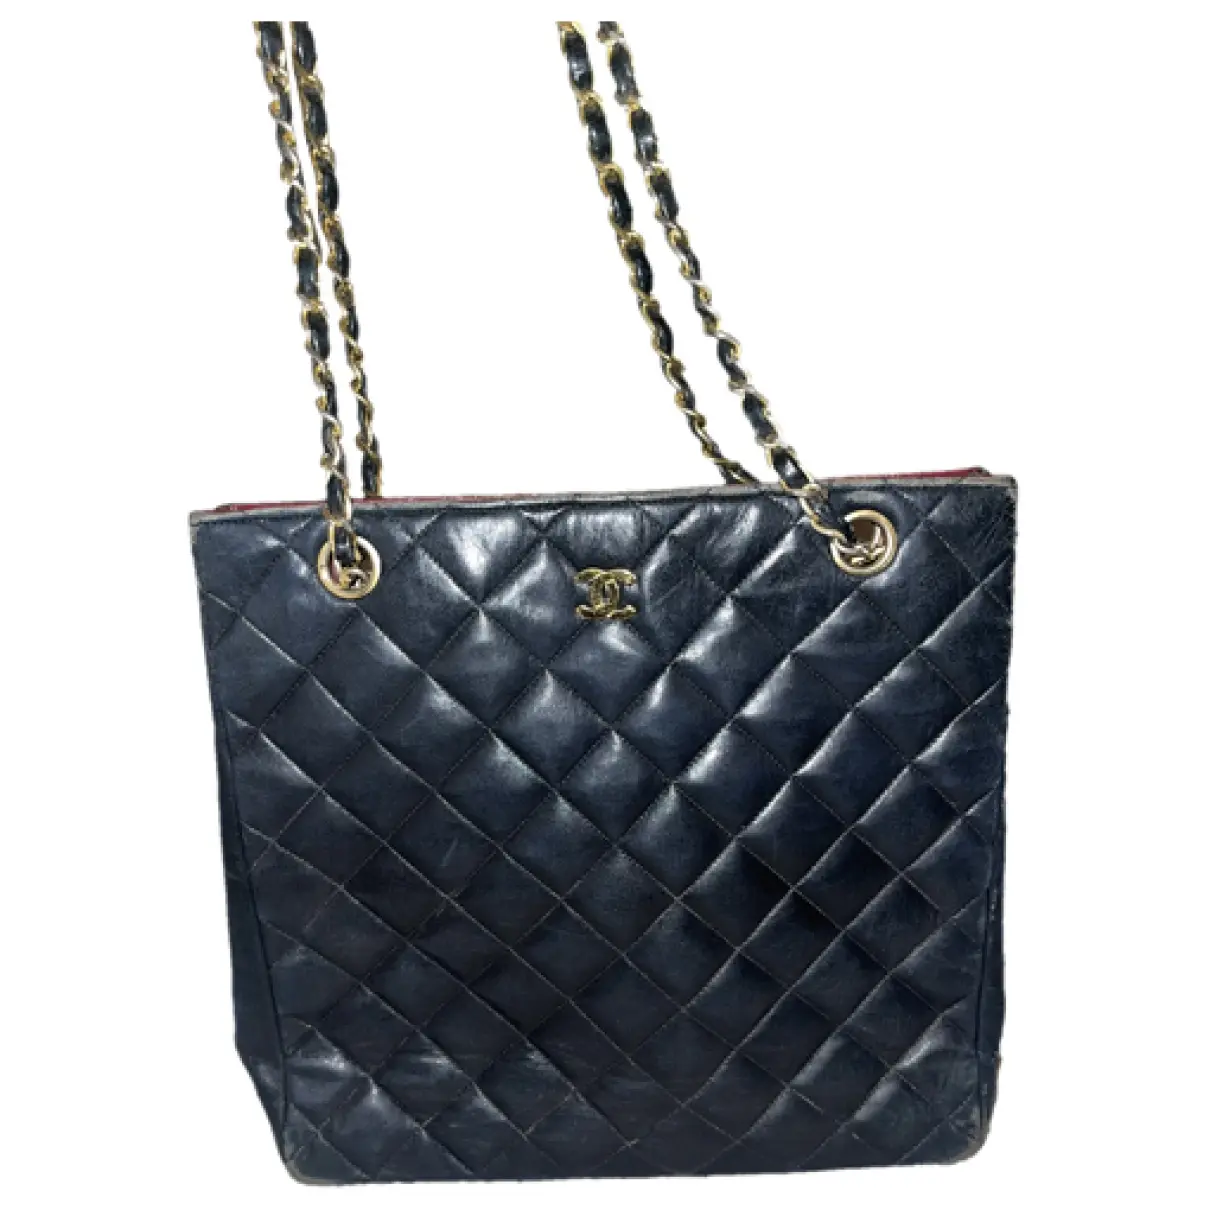 31 Vintage leather handbag